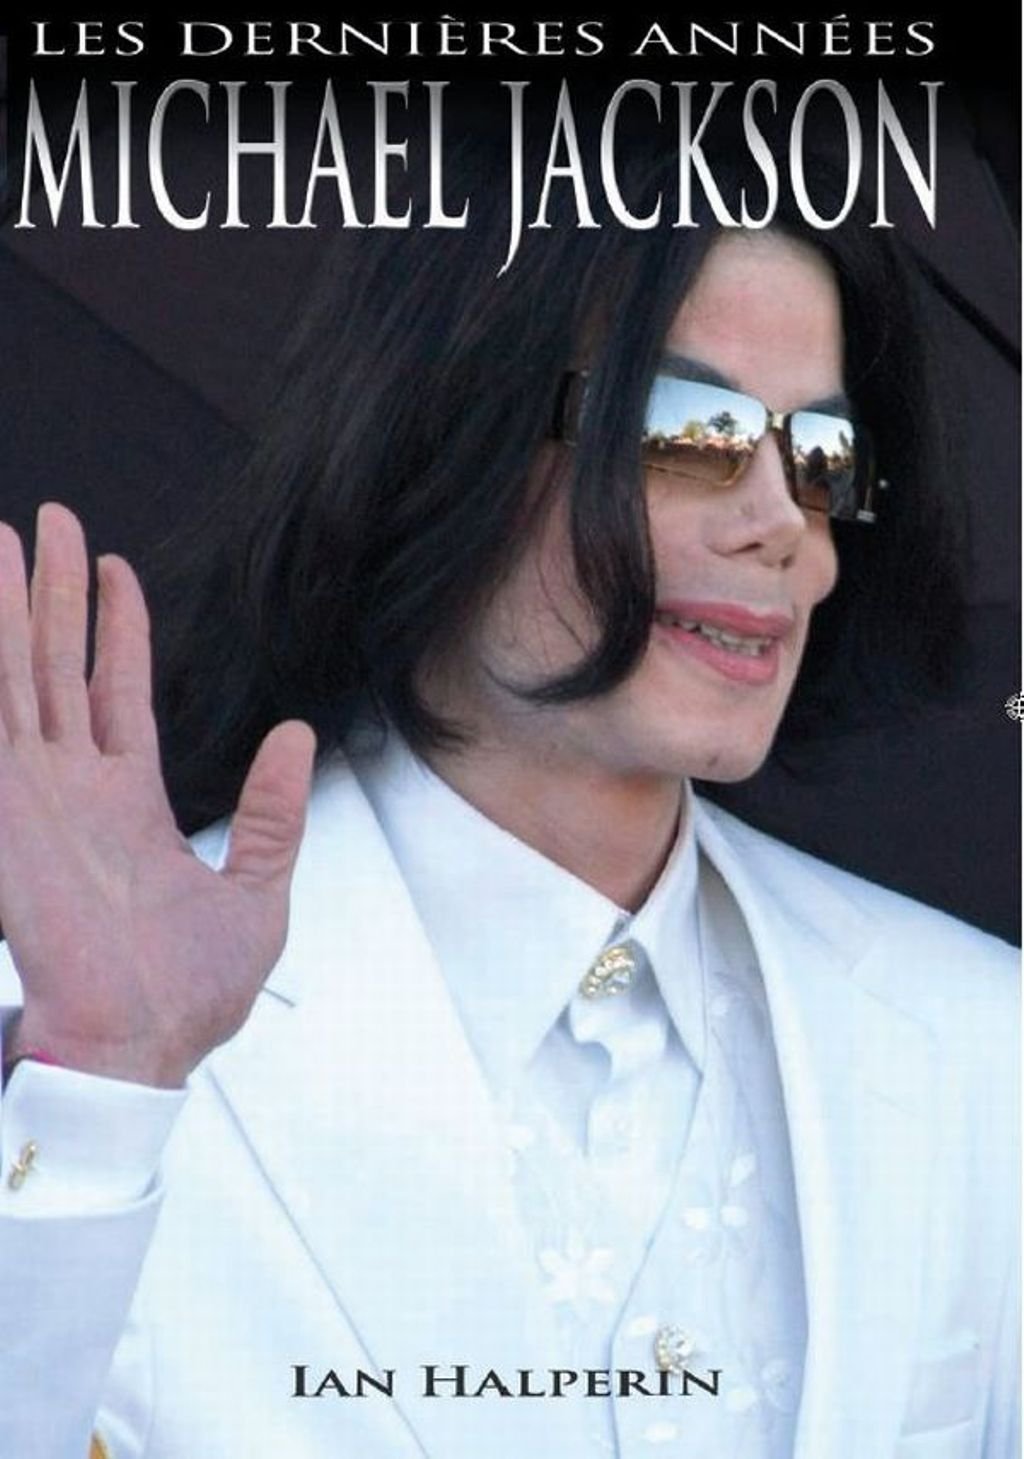 Michael Jackson - Les dernières années - Ian Halperin